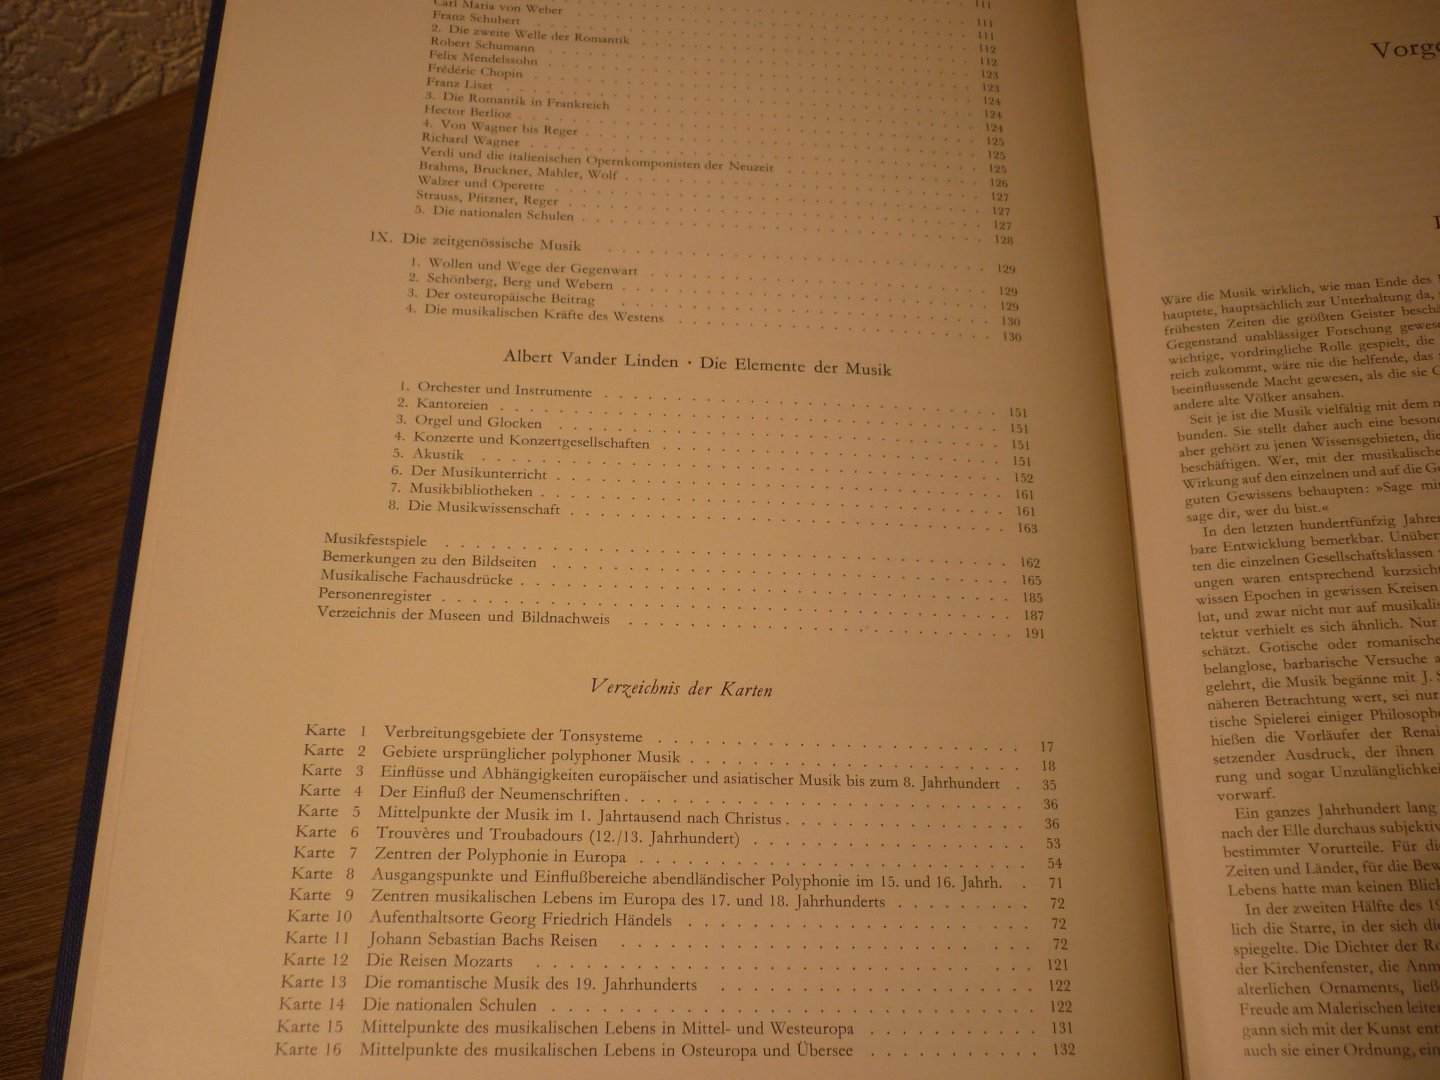 Schnoor; Hans - Bildatlas der Musikgeschichte - Deutsche Ausgabe / Collaer, Paul; van der Linden, Albert; van den Bremt, Frans